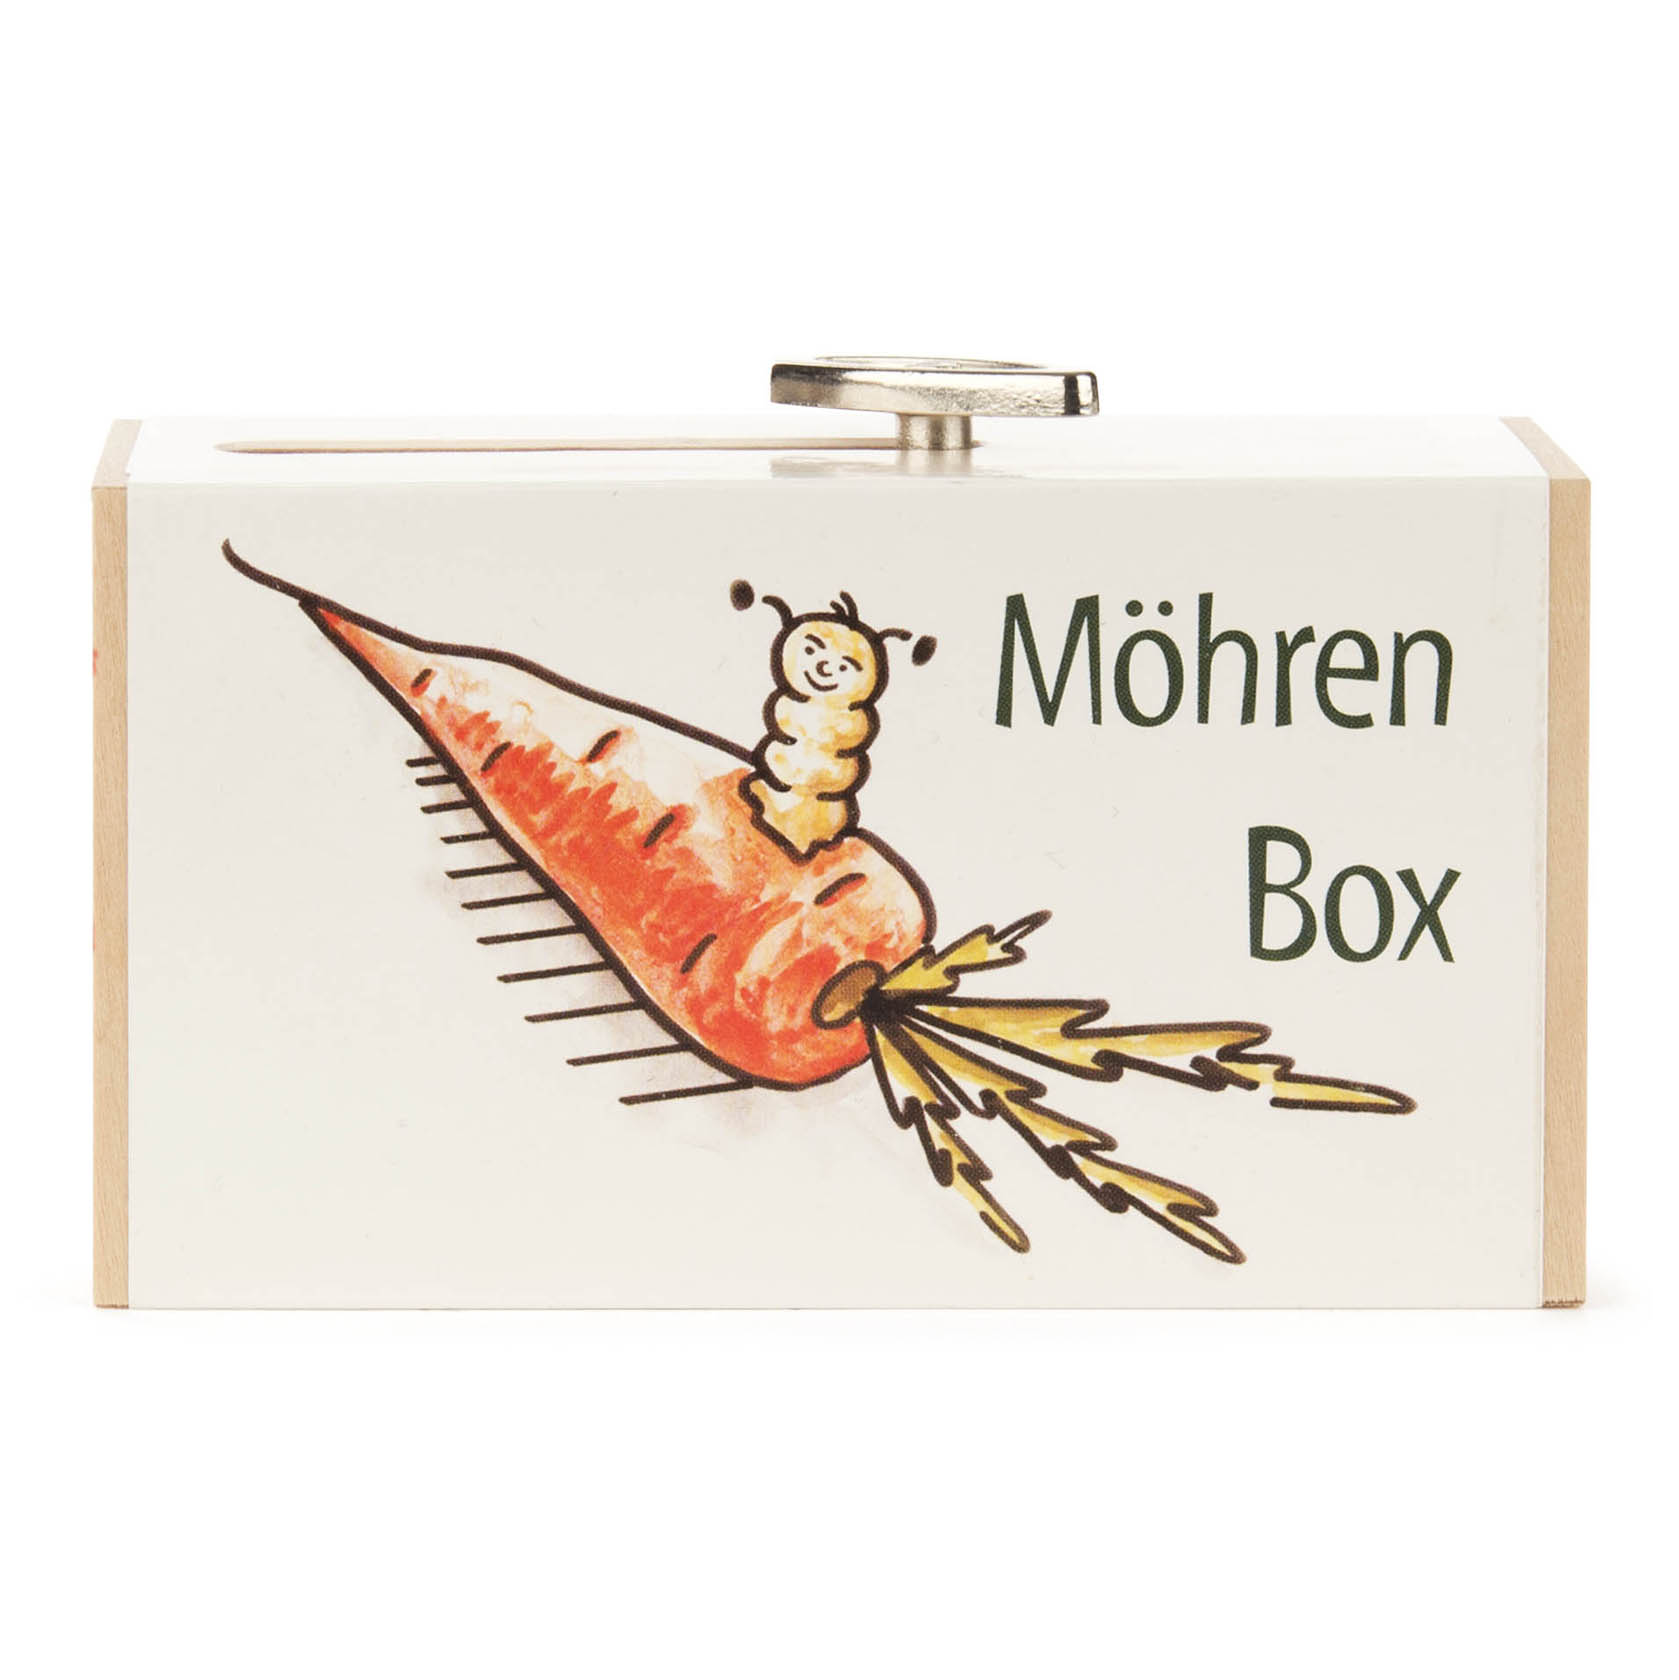 Schiebebox "Möhren-Box" mit Hase Melodie: Humpty Dumpty